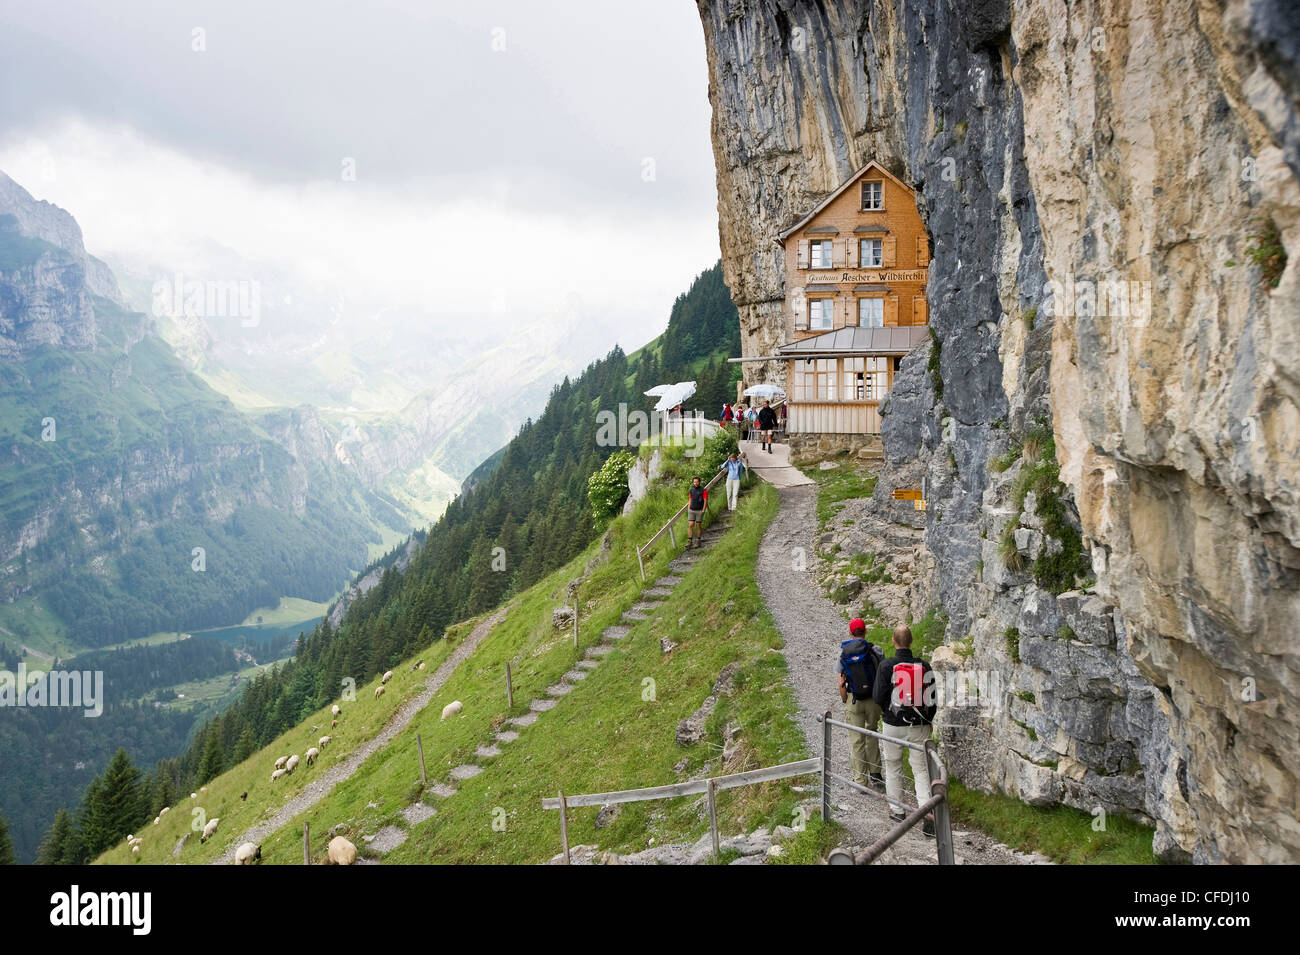 Mountain hikers near mountain inn Aescher, Ebenalp, Alpstein massif, Appenzell Innerrhoden, Switzerland Stock Photo